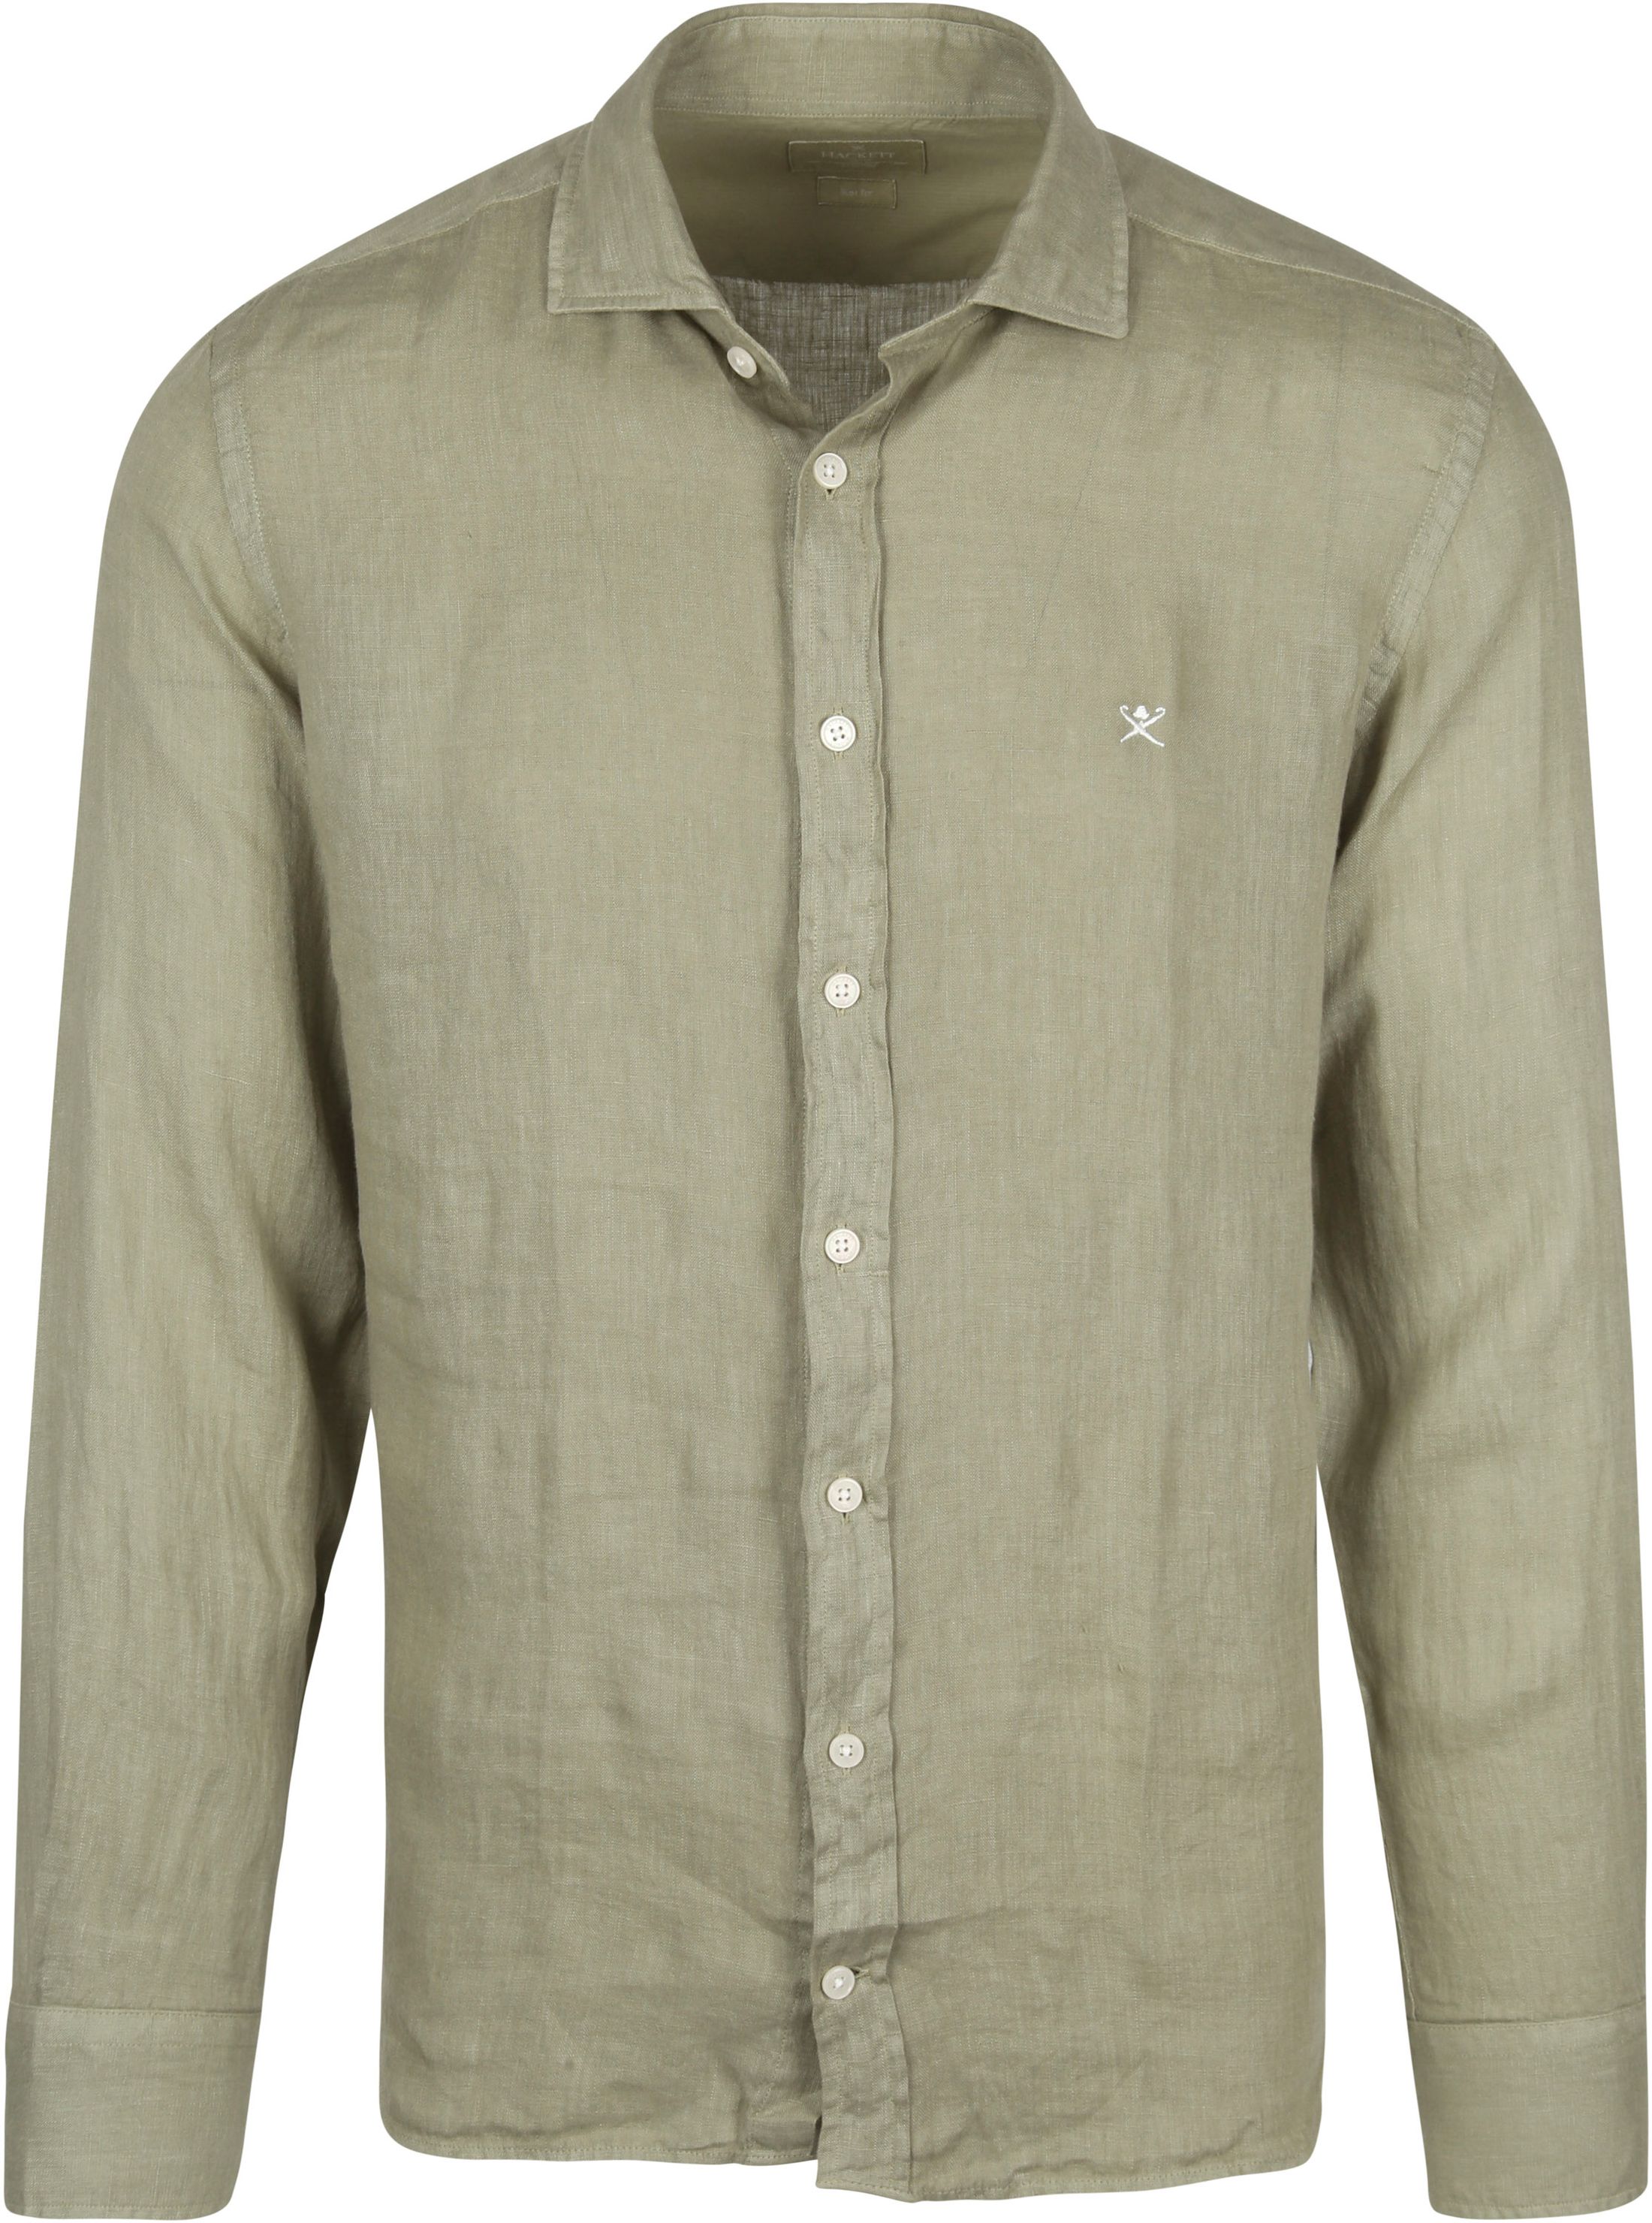 Hackett Shirt Garment Dyed Linen Olive Green size L